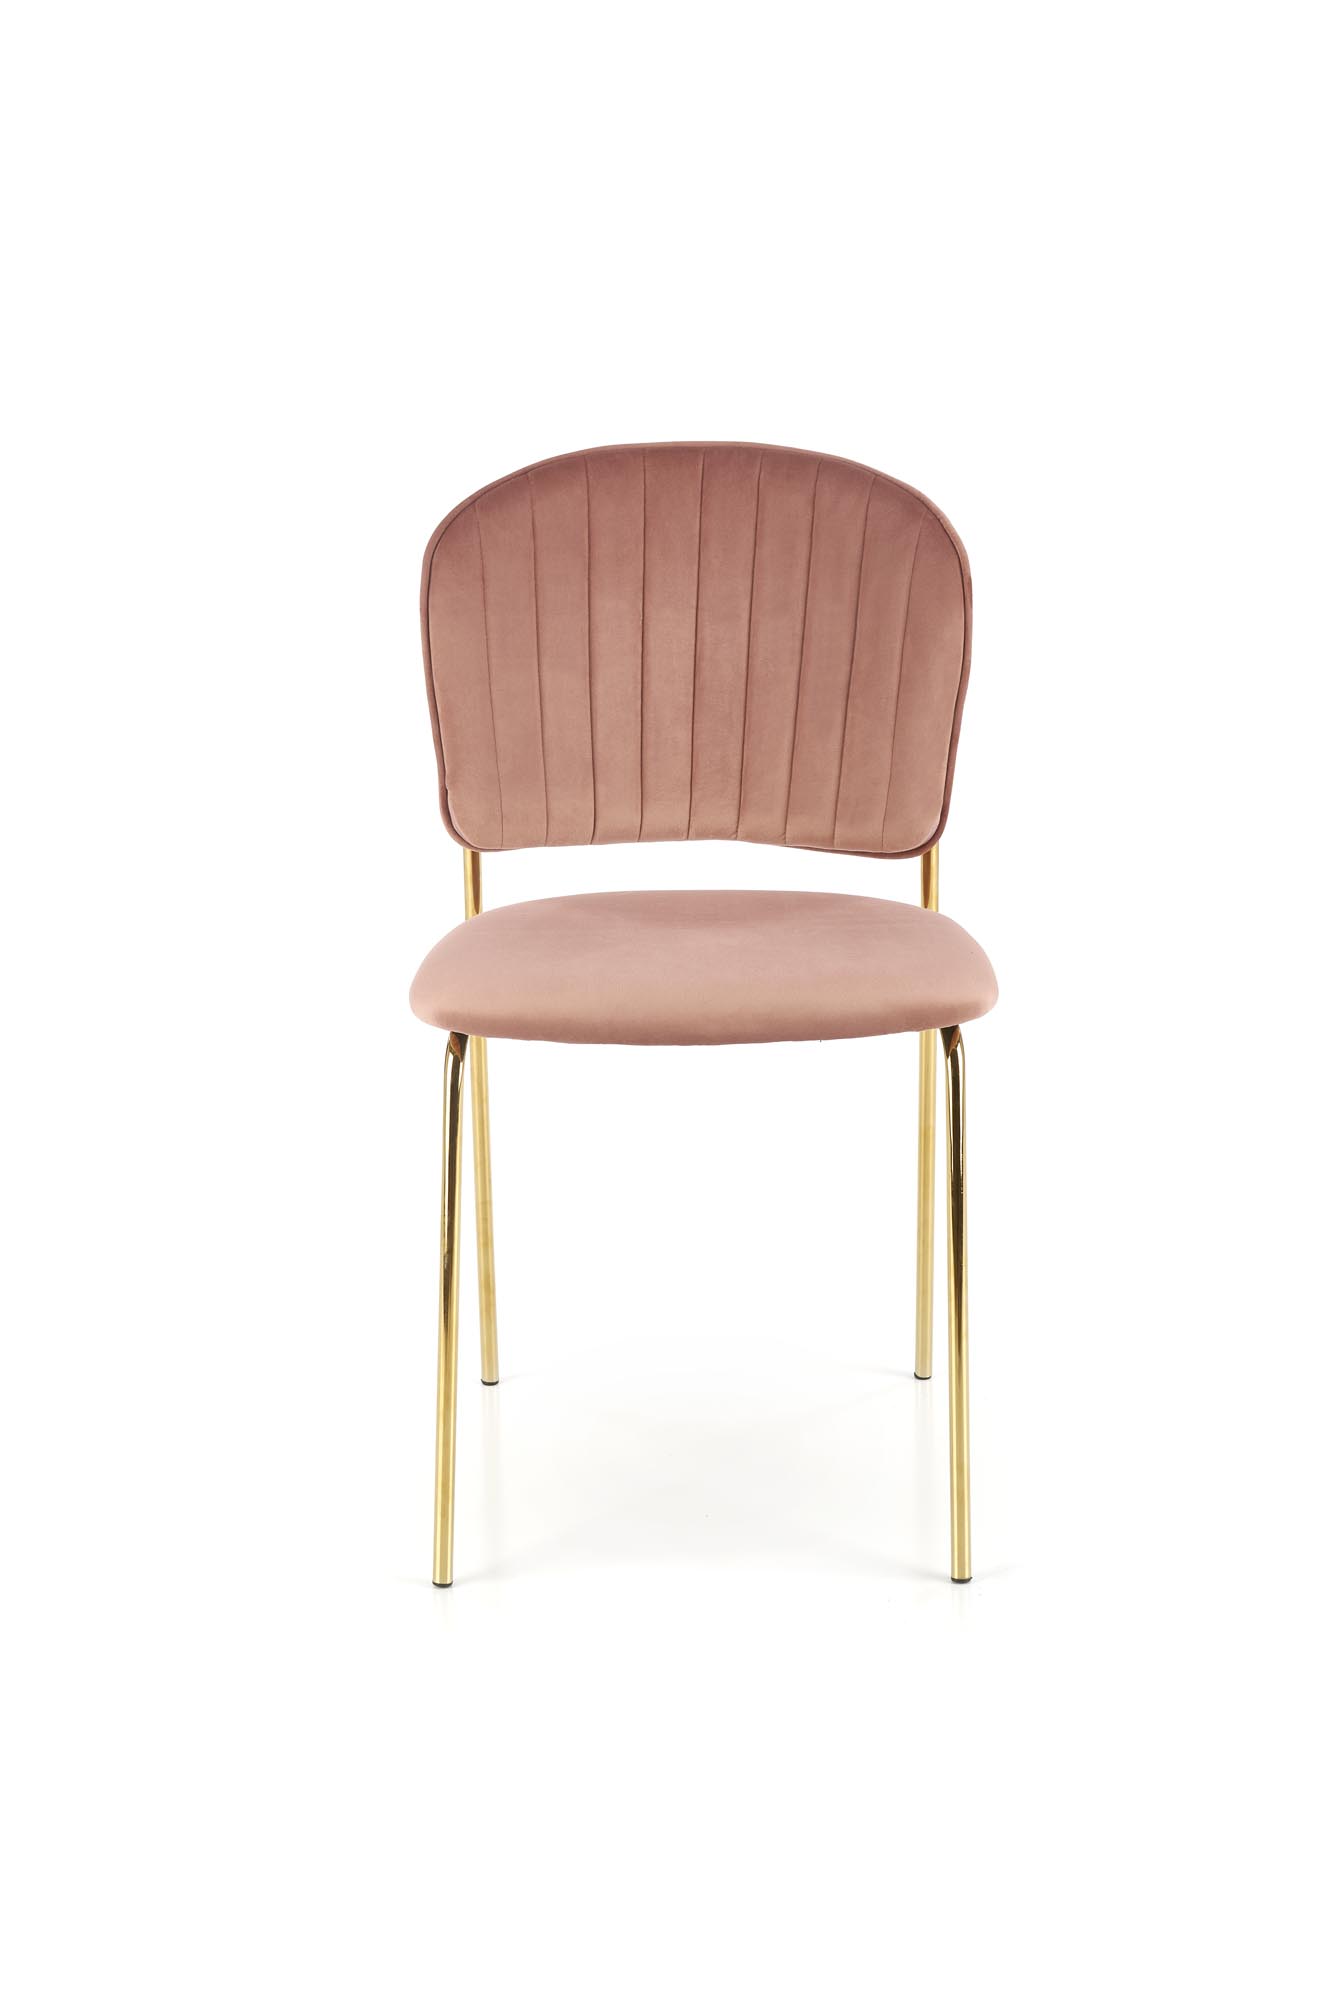 Scaun tapițat K499 - Roz Židle čalouněné k499 - Růžová